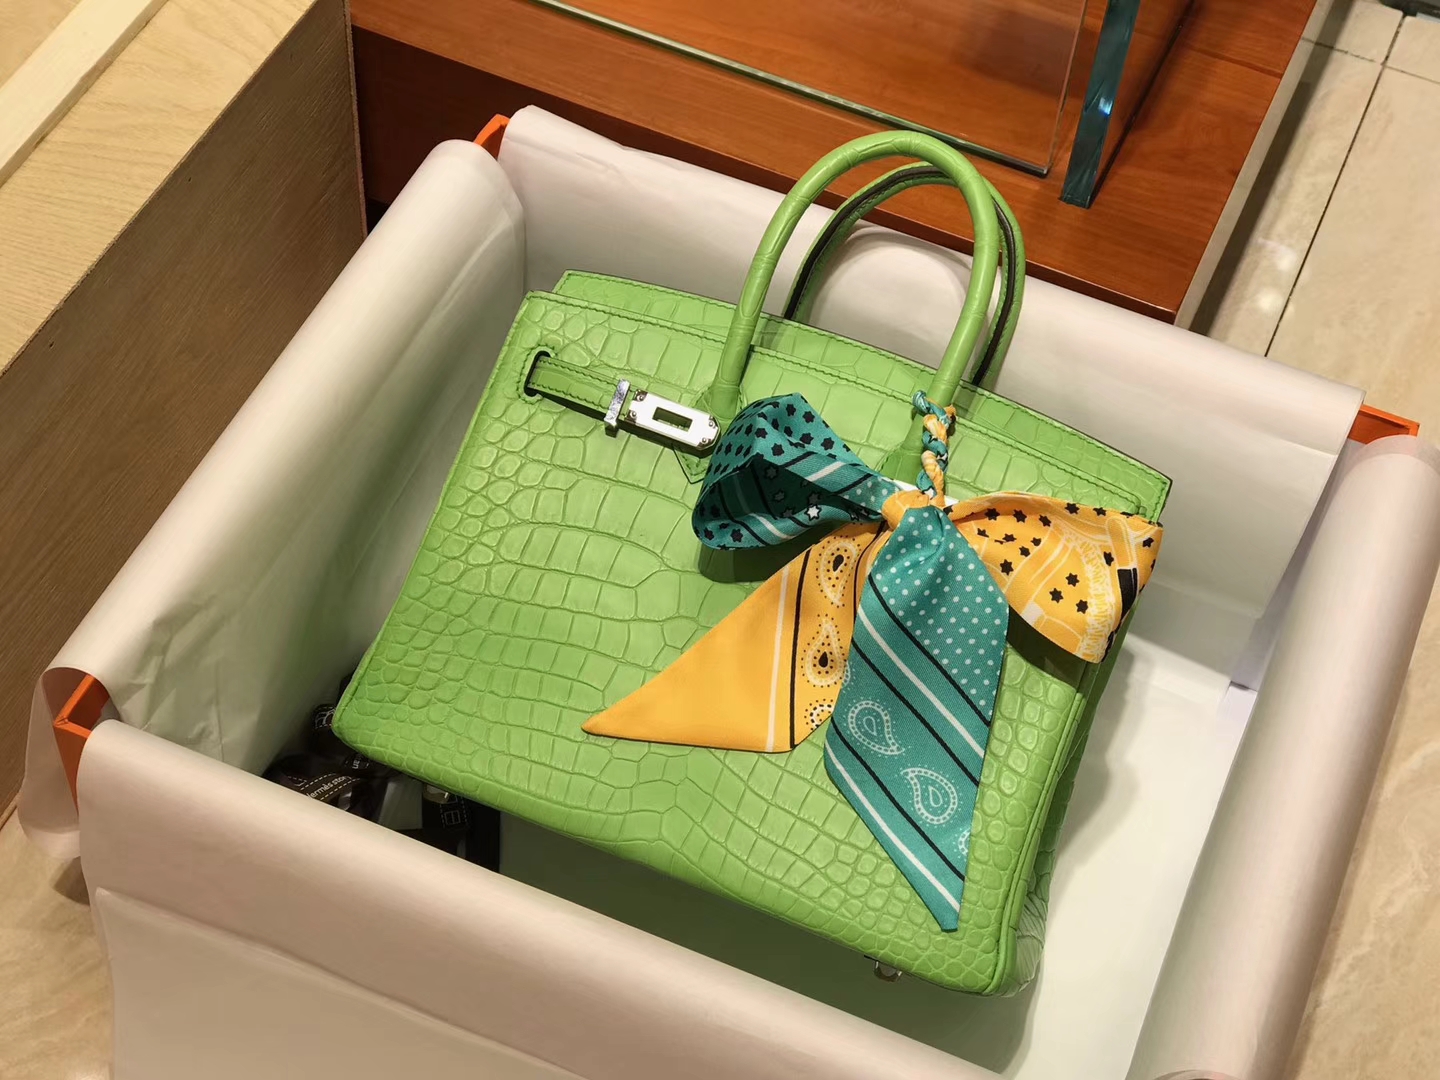 爱马仕 HERMES 铂金包 Birkin 配全套专柜原版包装 全球发售 6R Kiwi 奇异果绿 糖果绿